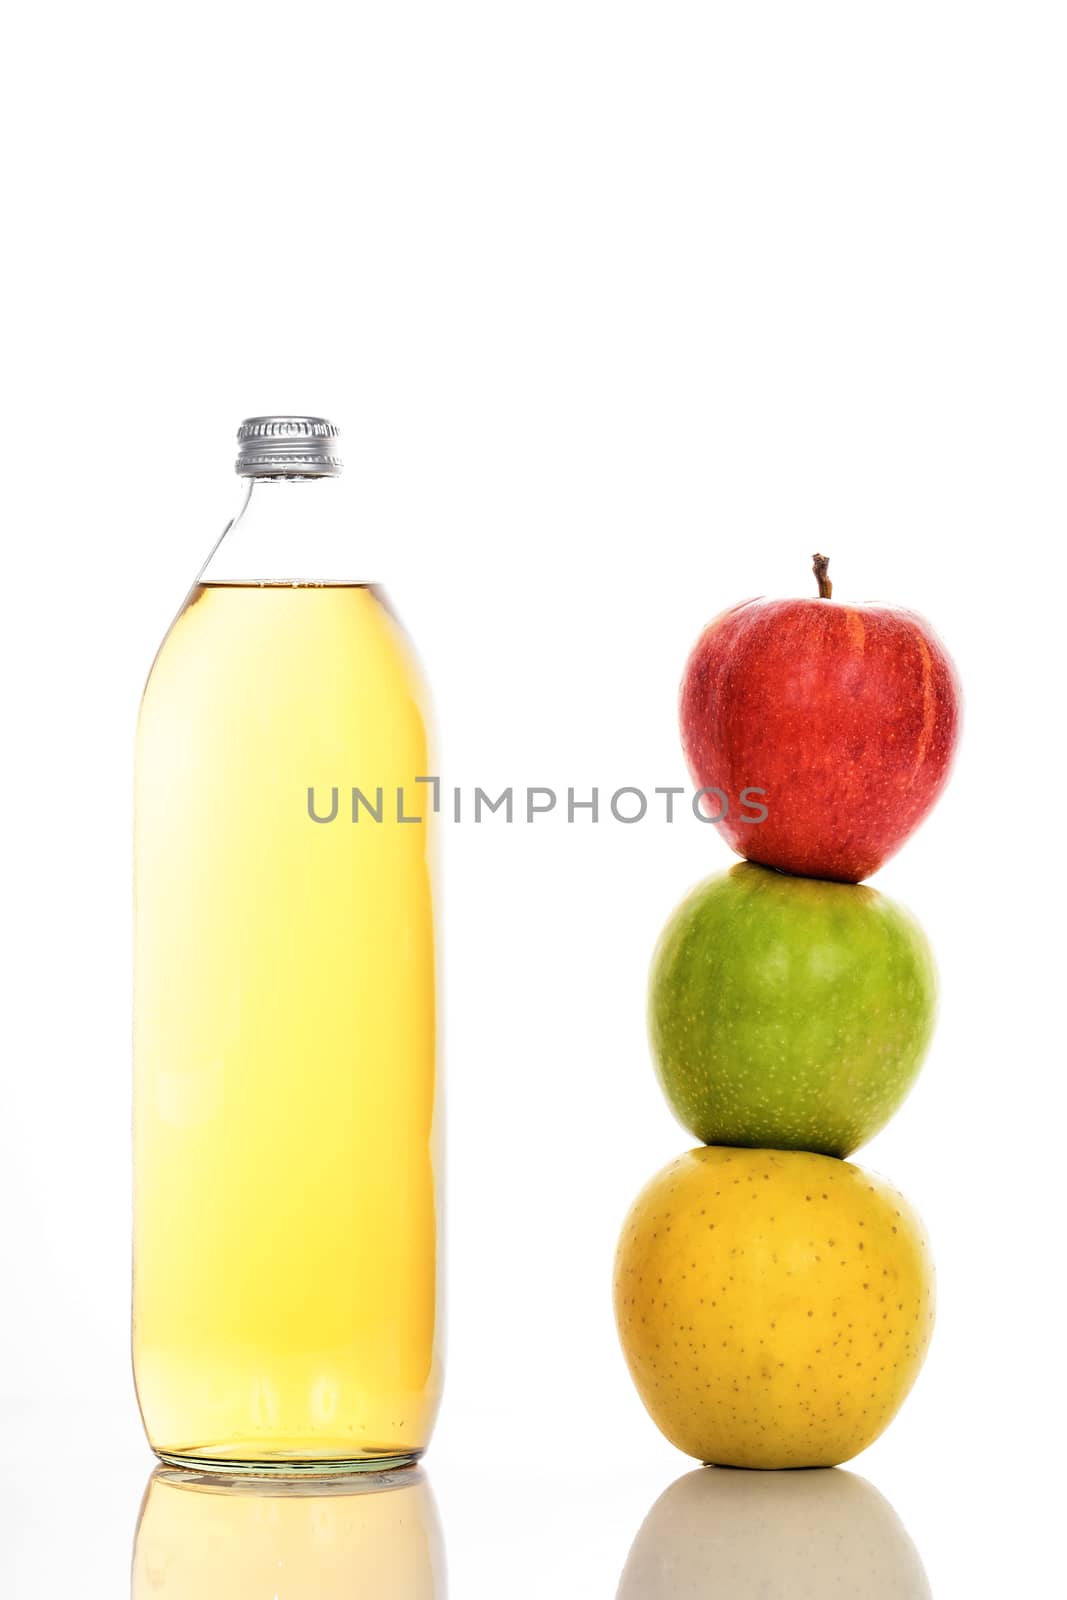 Apple juice in glass bottle by vwalakte